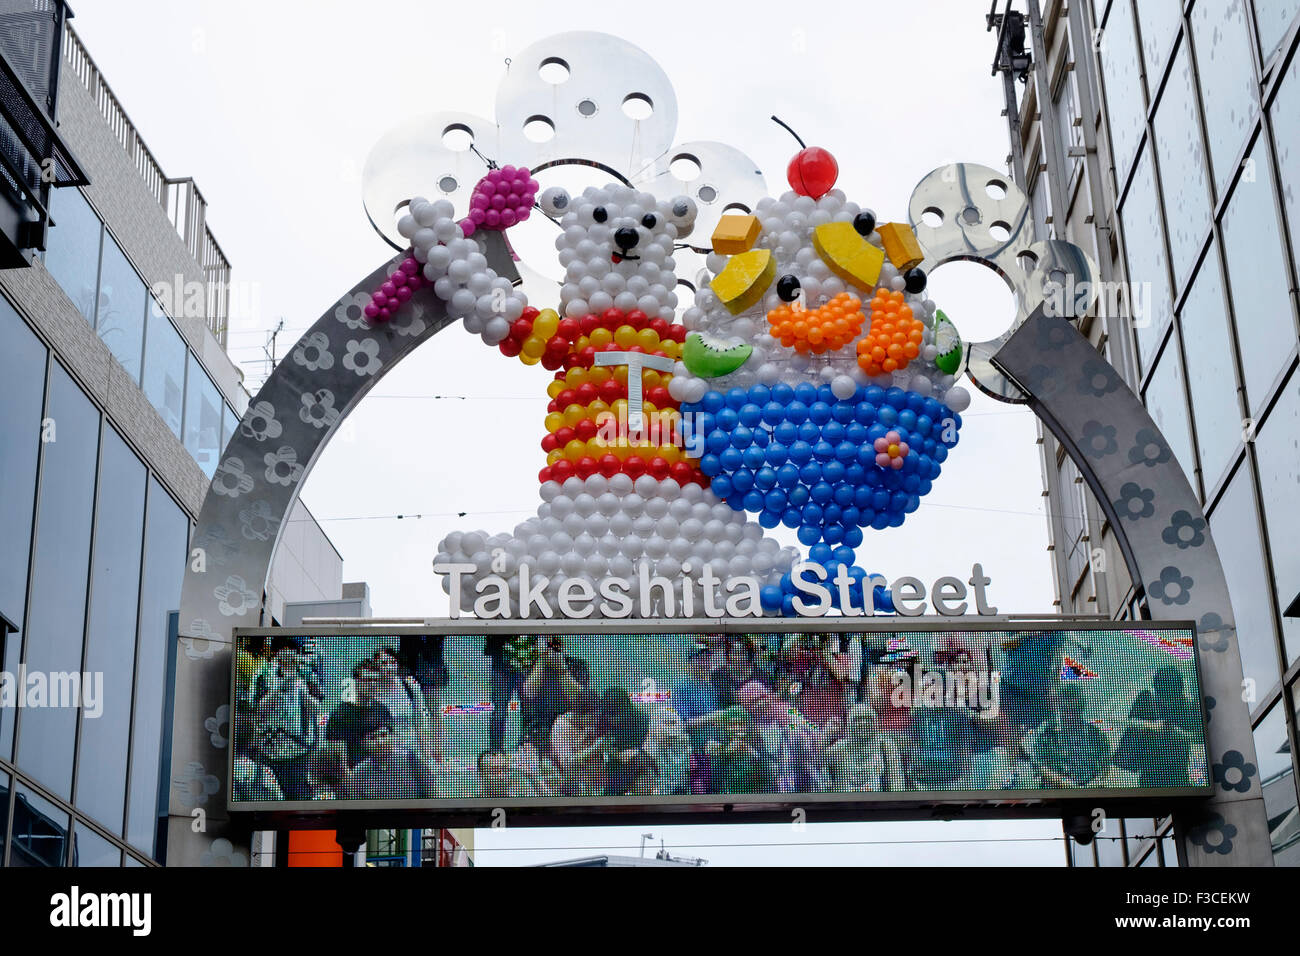 La rue commerçante piétonnière Takeshita sur Harajuku trendy district de Tokyo Japon Banque D'Images